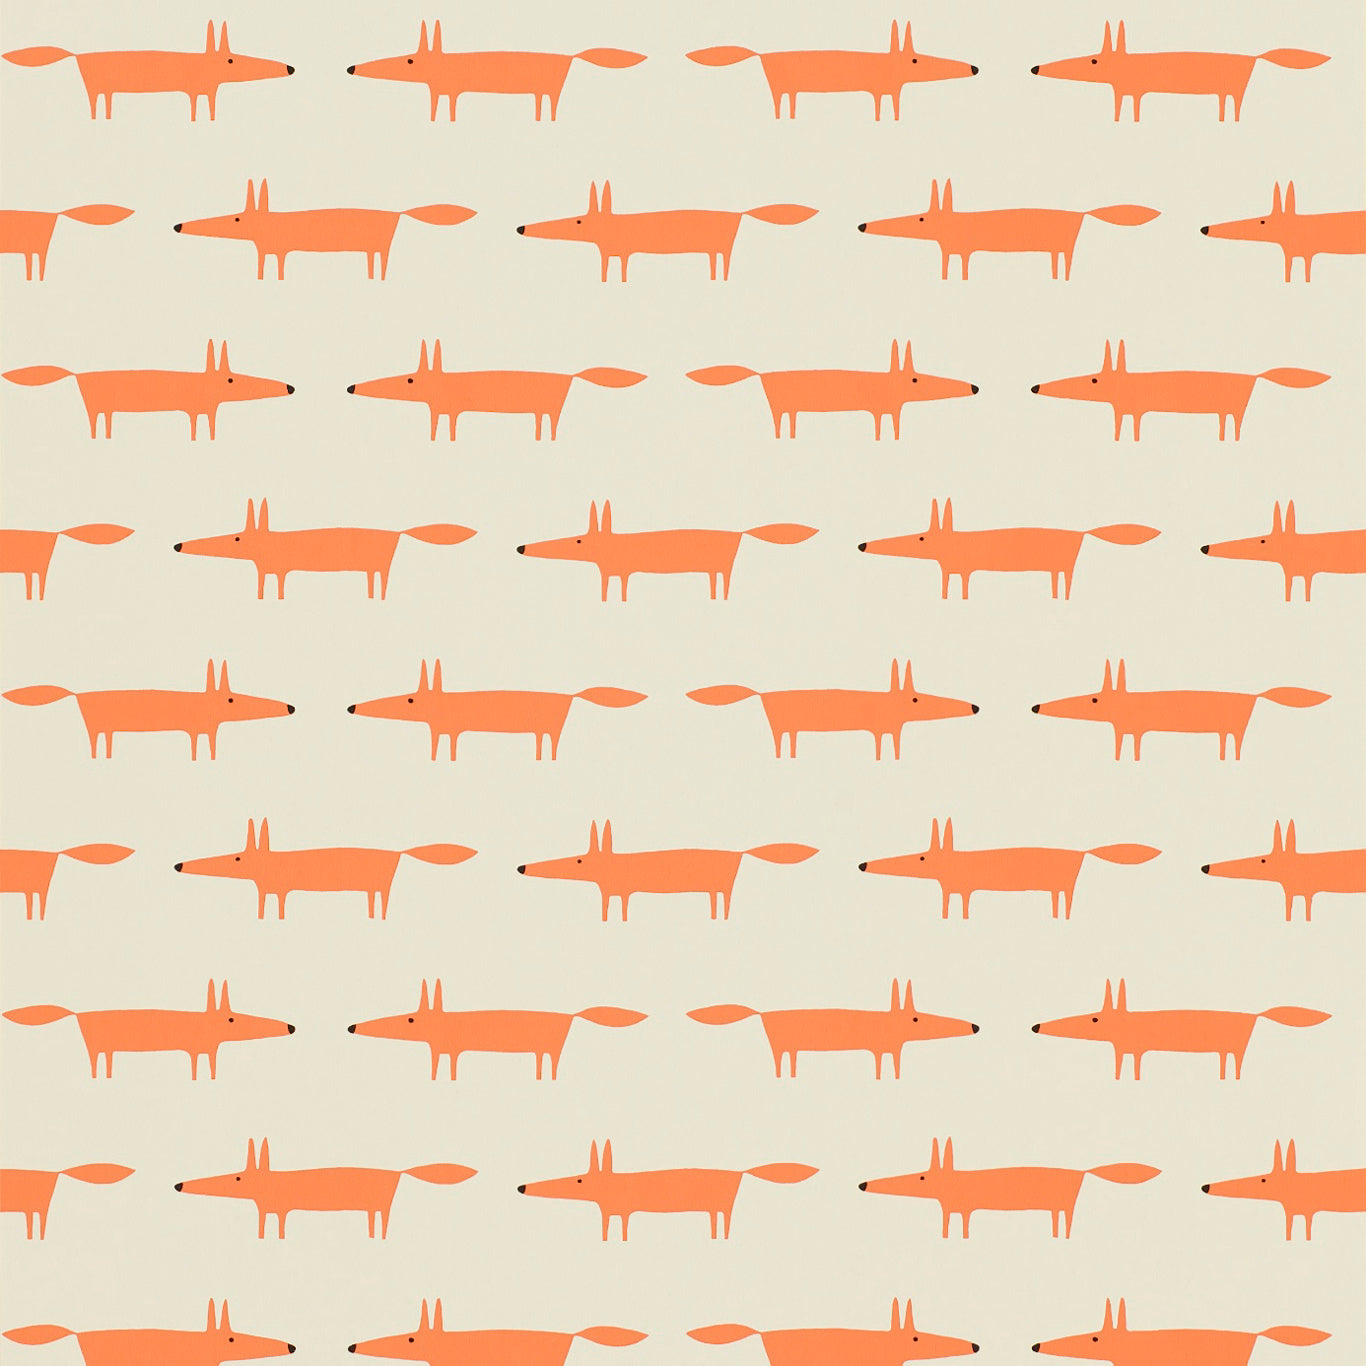 Little Fox Wallpaper by Scion